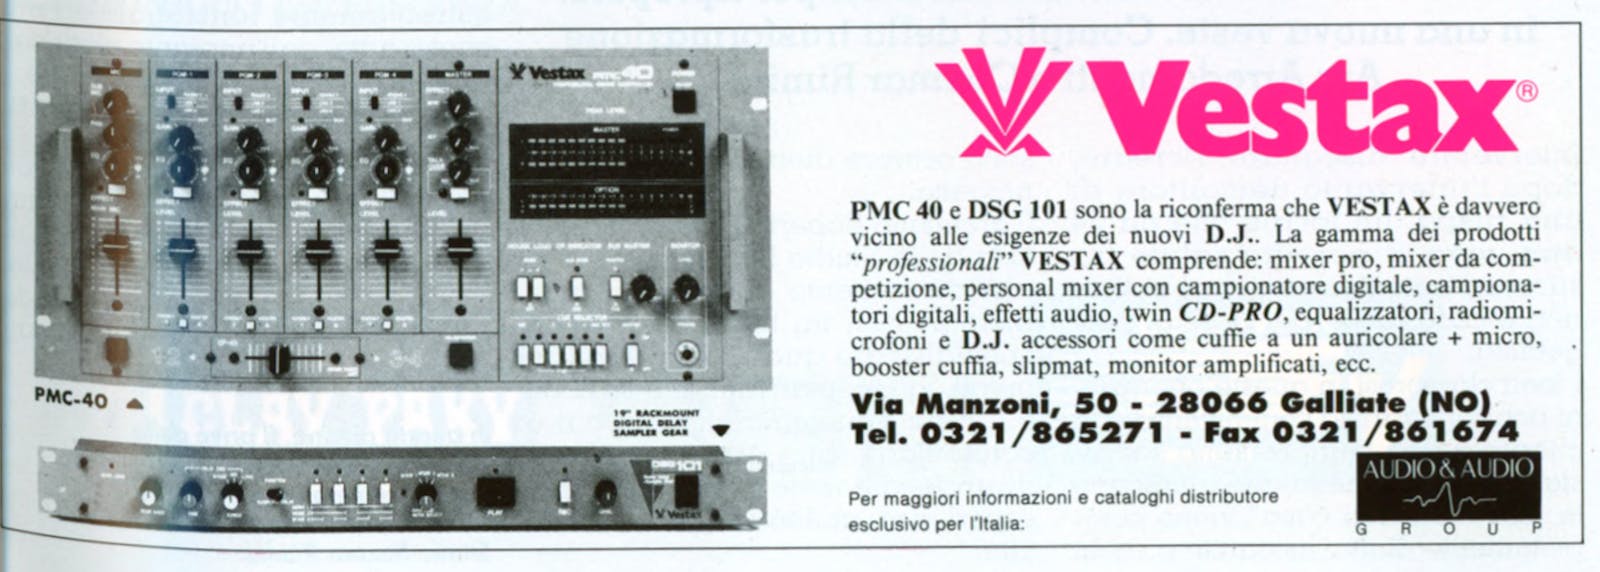 Pubblicità Vestax: PMC40 e DSG101